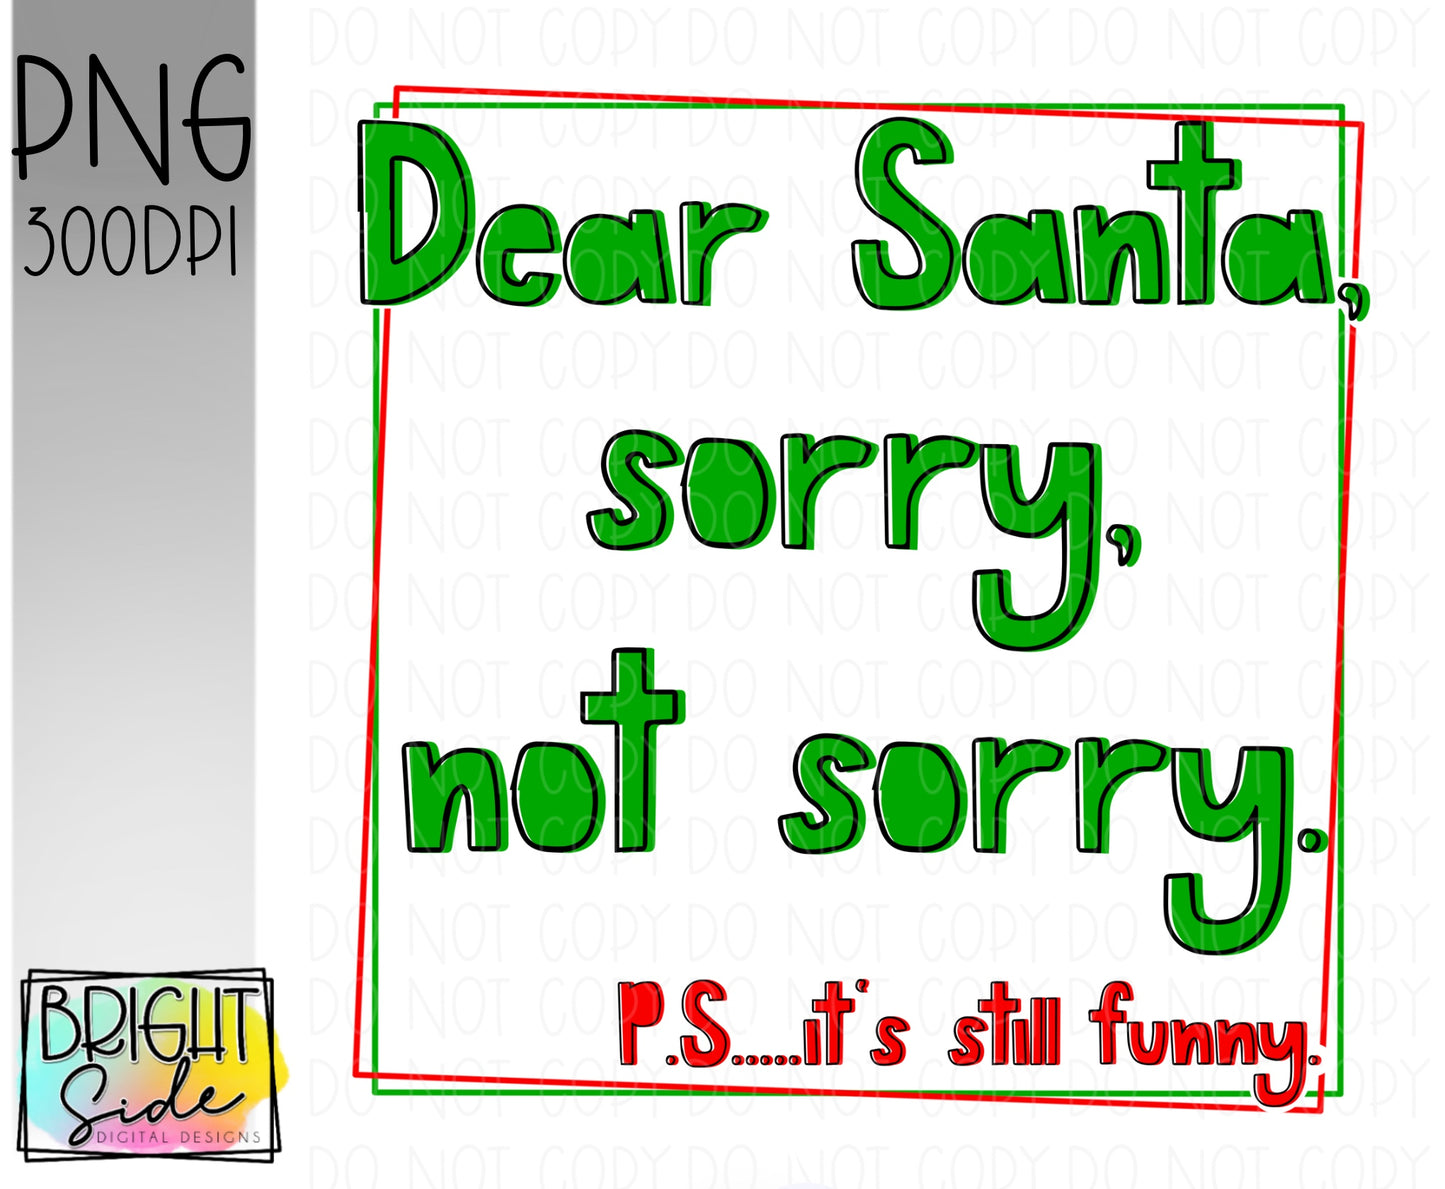 Dear Santa, sorry not sorry.